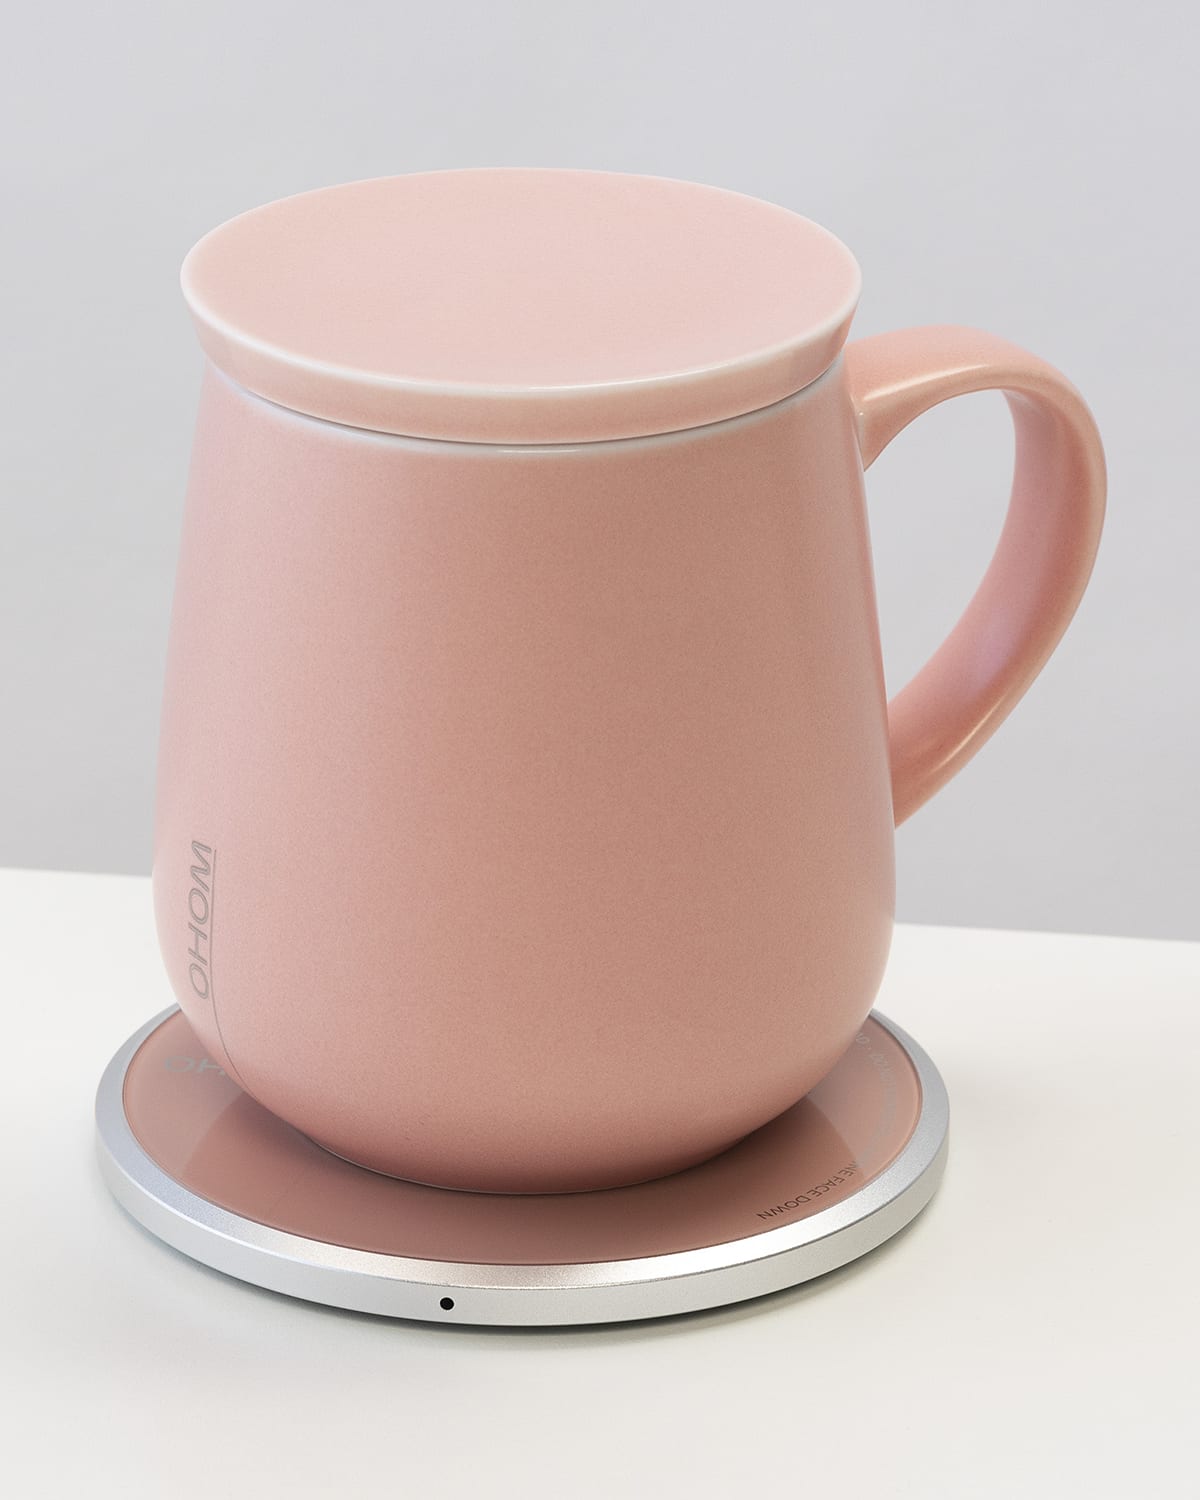 Ohom Ui Self-heating Mug, 12 Oz. In Pink